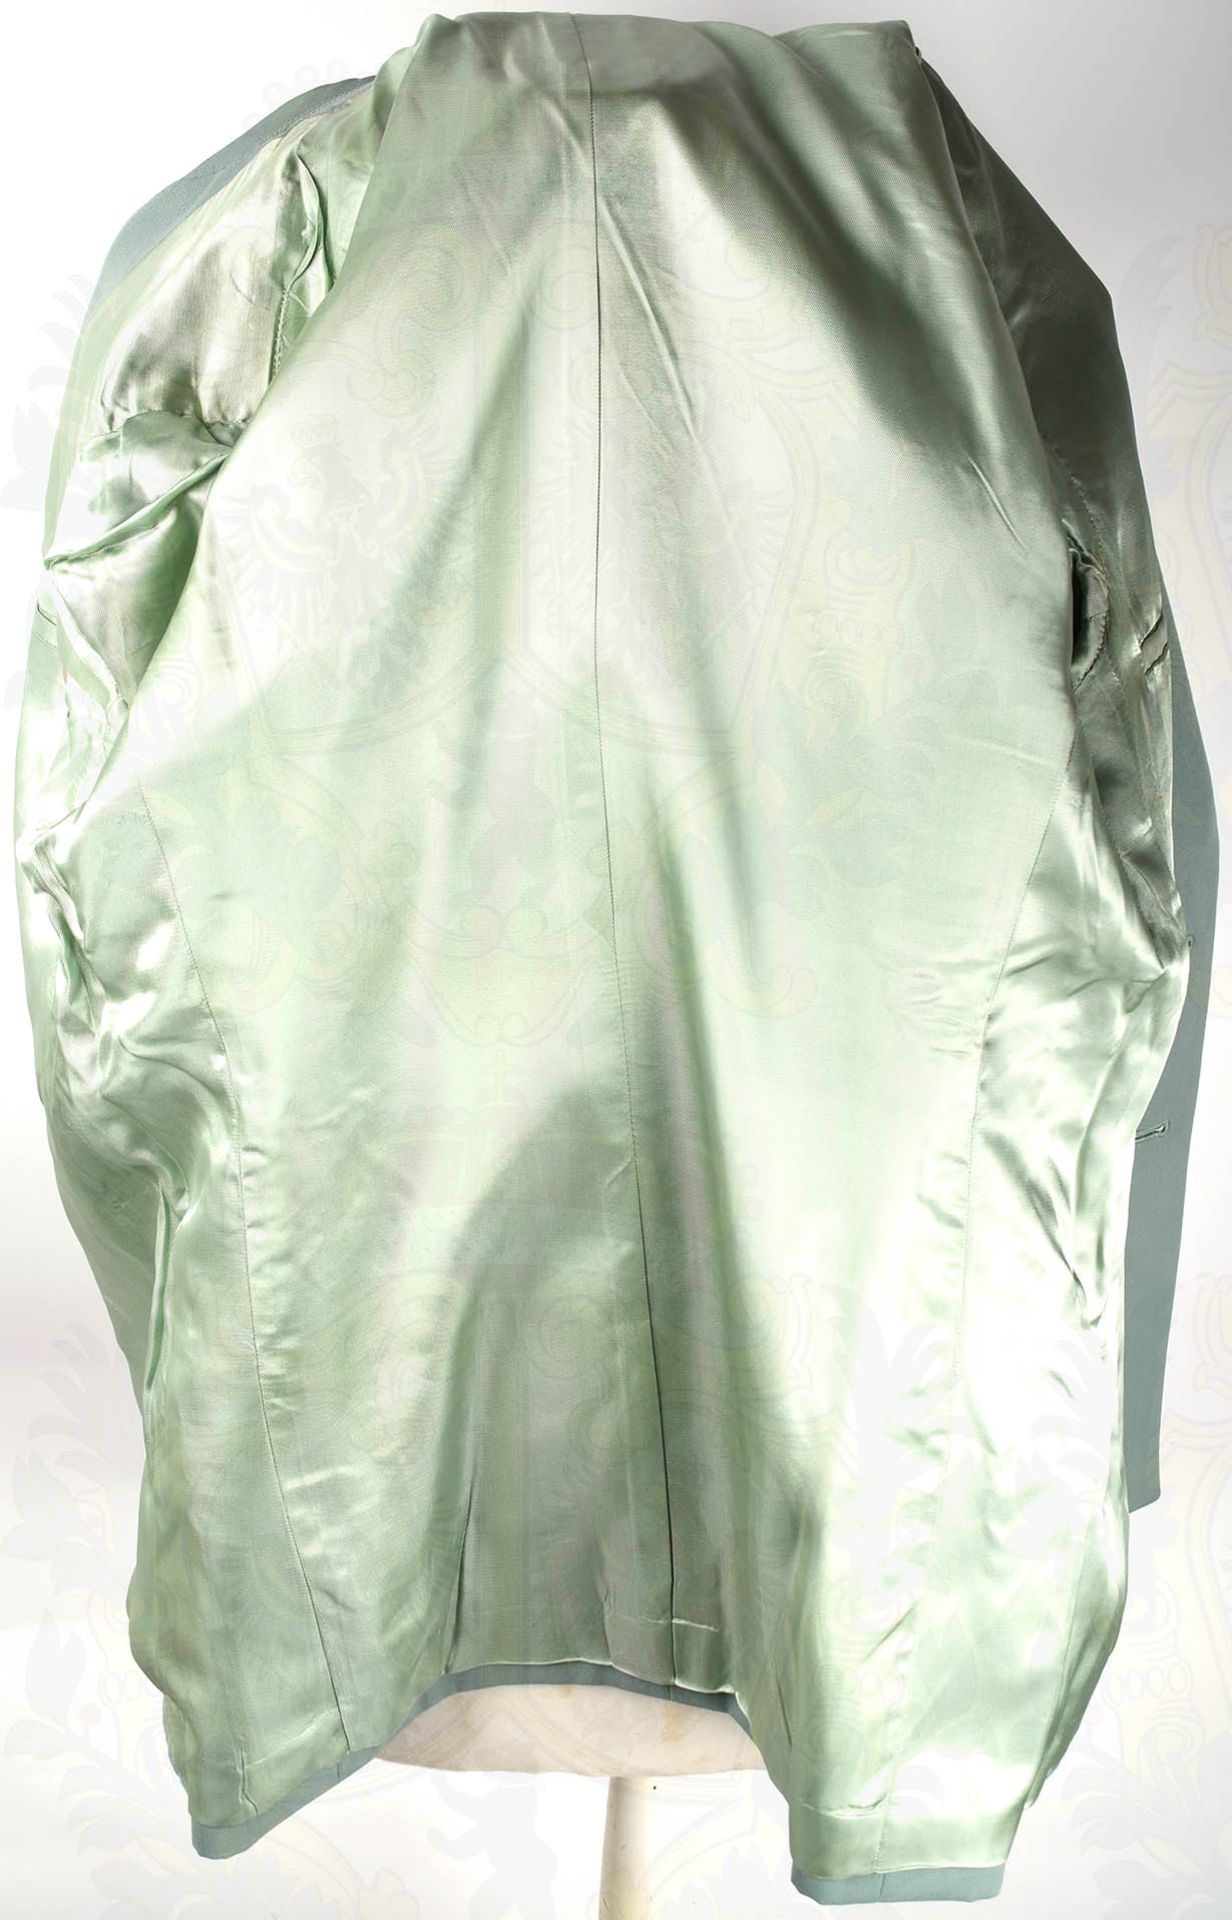 GESELLSCHAFTSUNIFORM GENERALMAJOR DER VP, Uniformrock aus graugrünen Tuch, mit 2 Taschen u. - Bild 8 aus 10